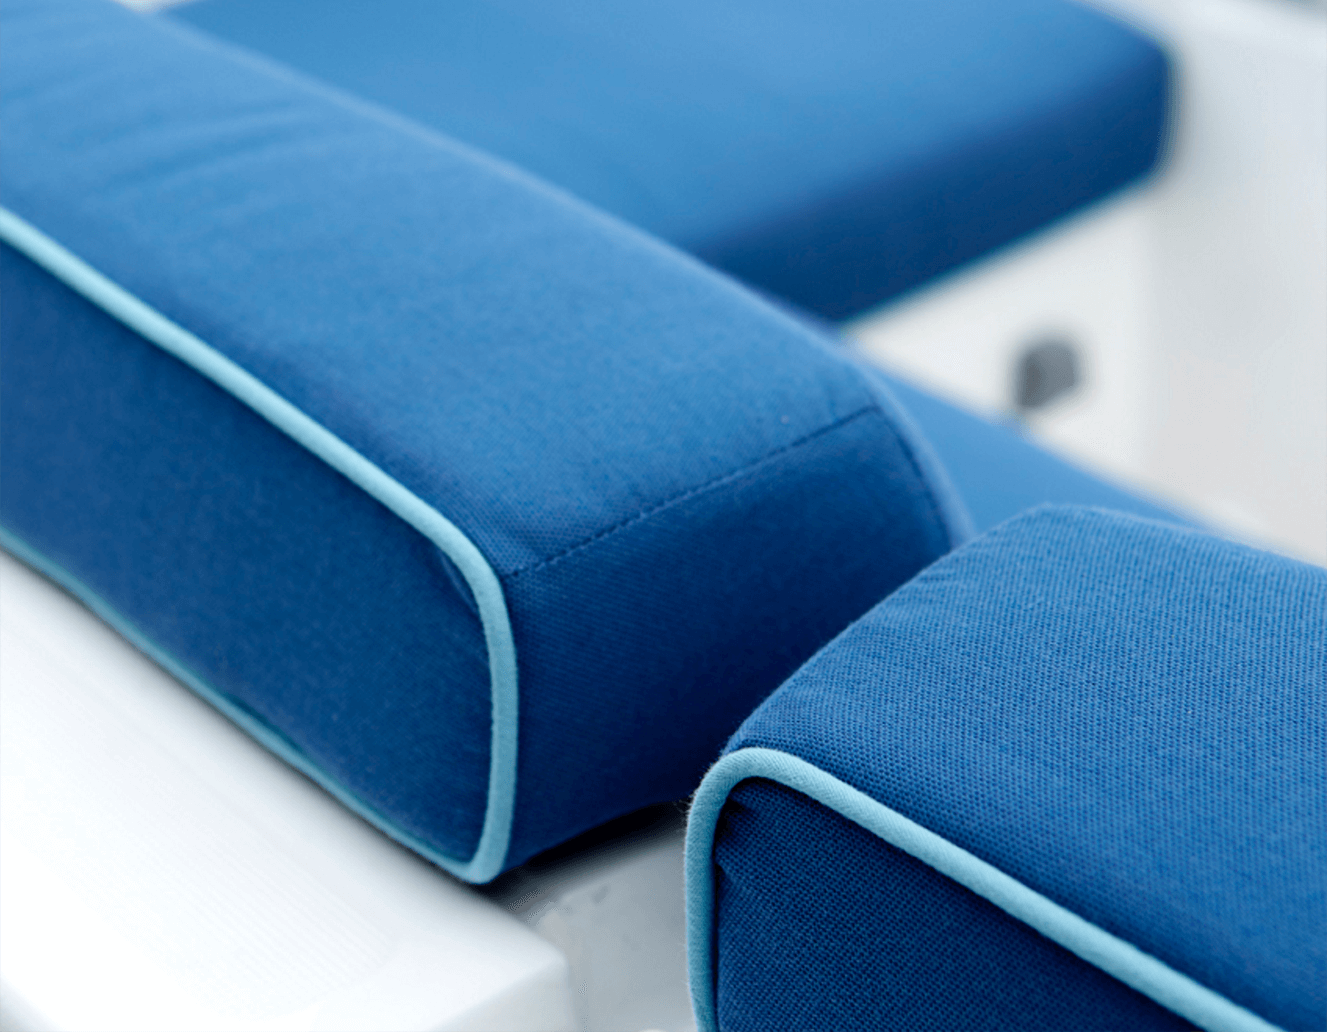 Detalle de cojines azules con ribete azul claro en cojines de asiento del bote